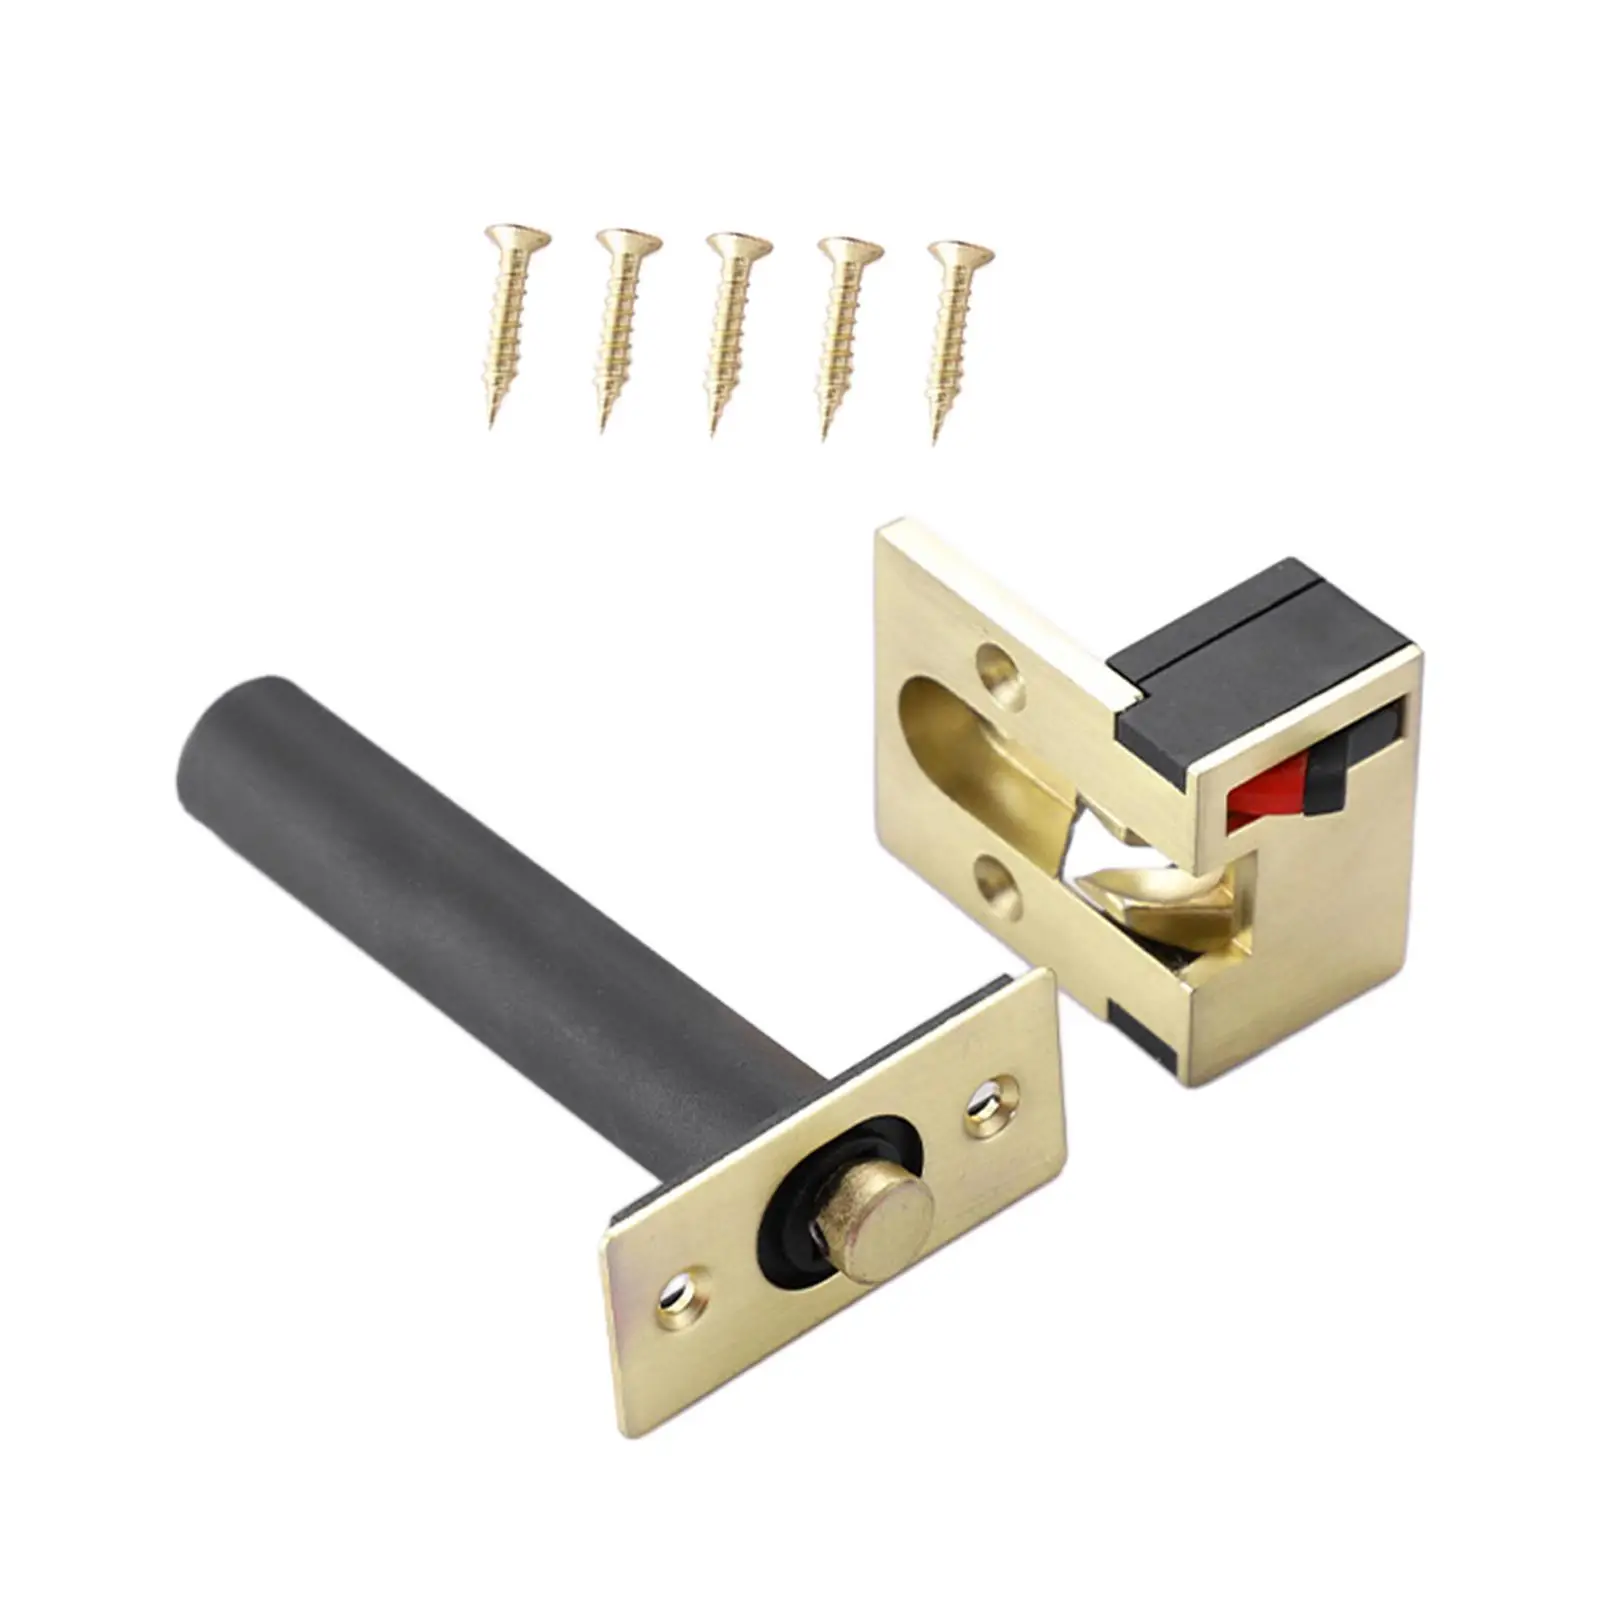 Door chain lock with 4 screws, heavy duty door bolt lock, simple